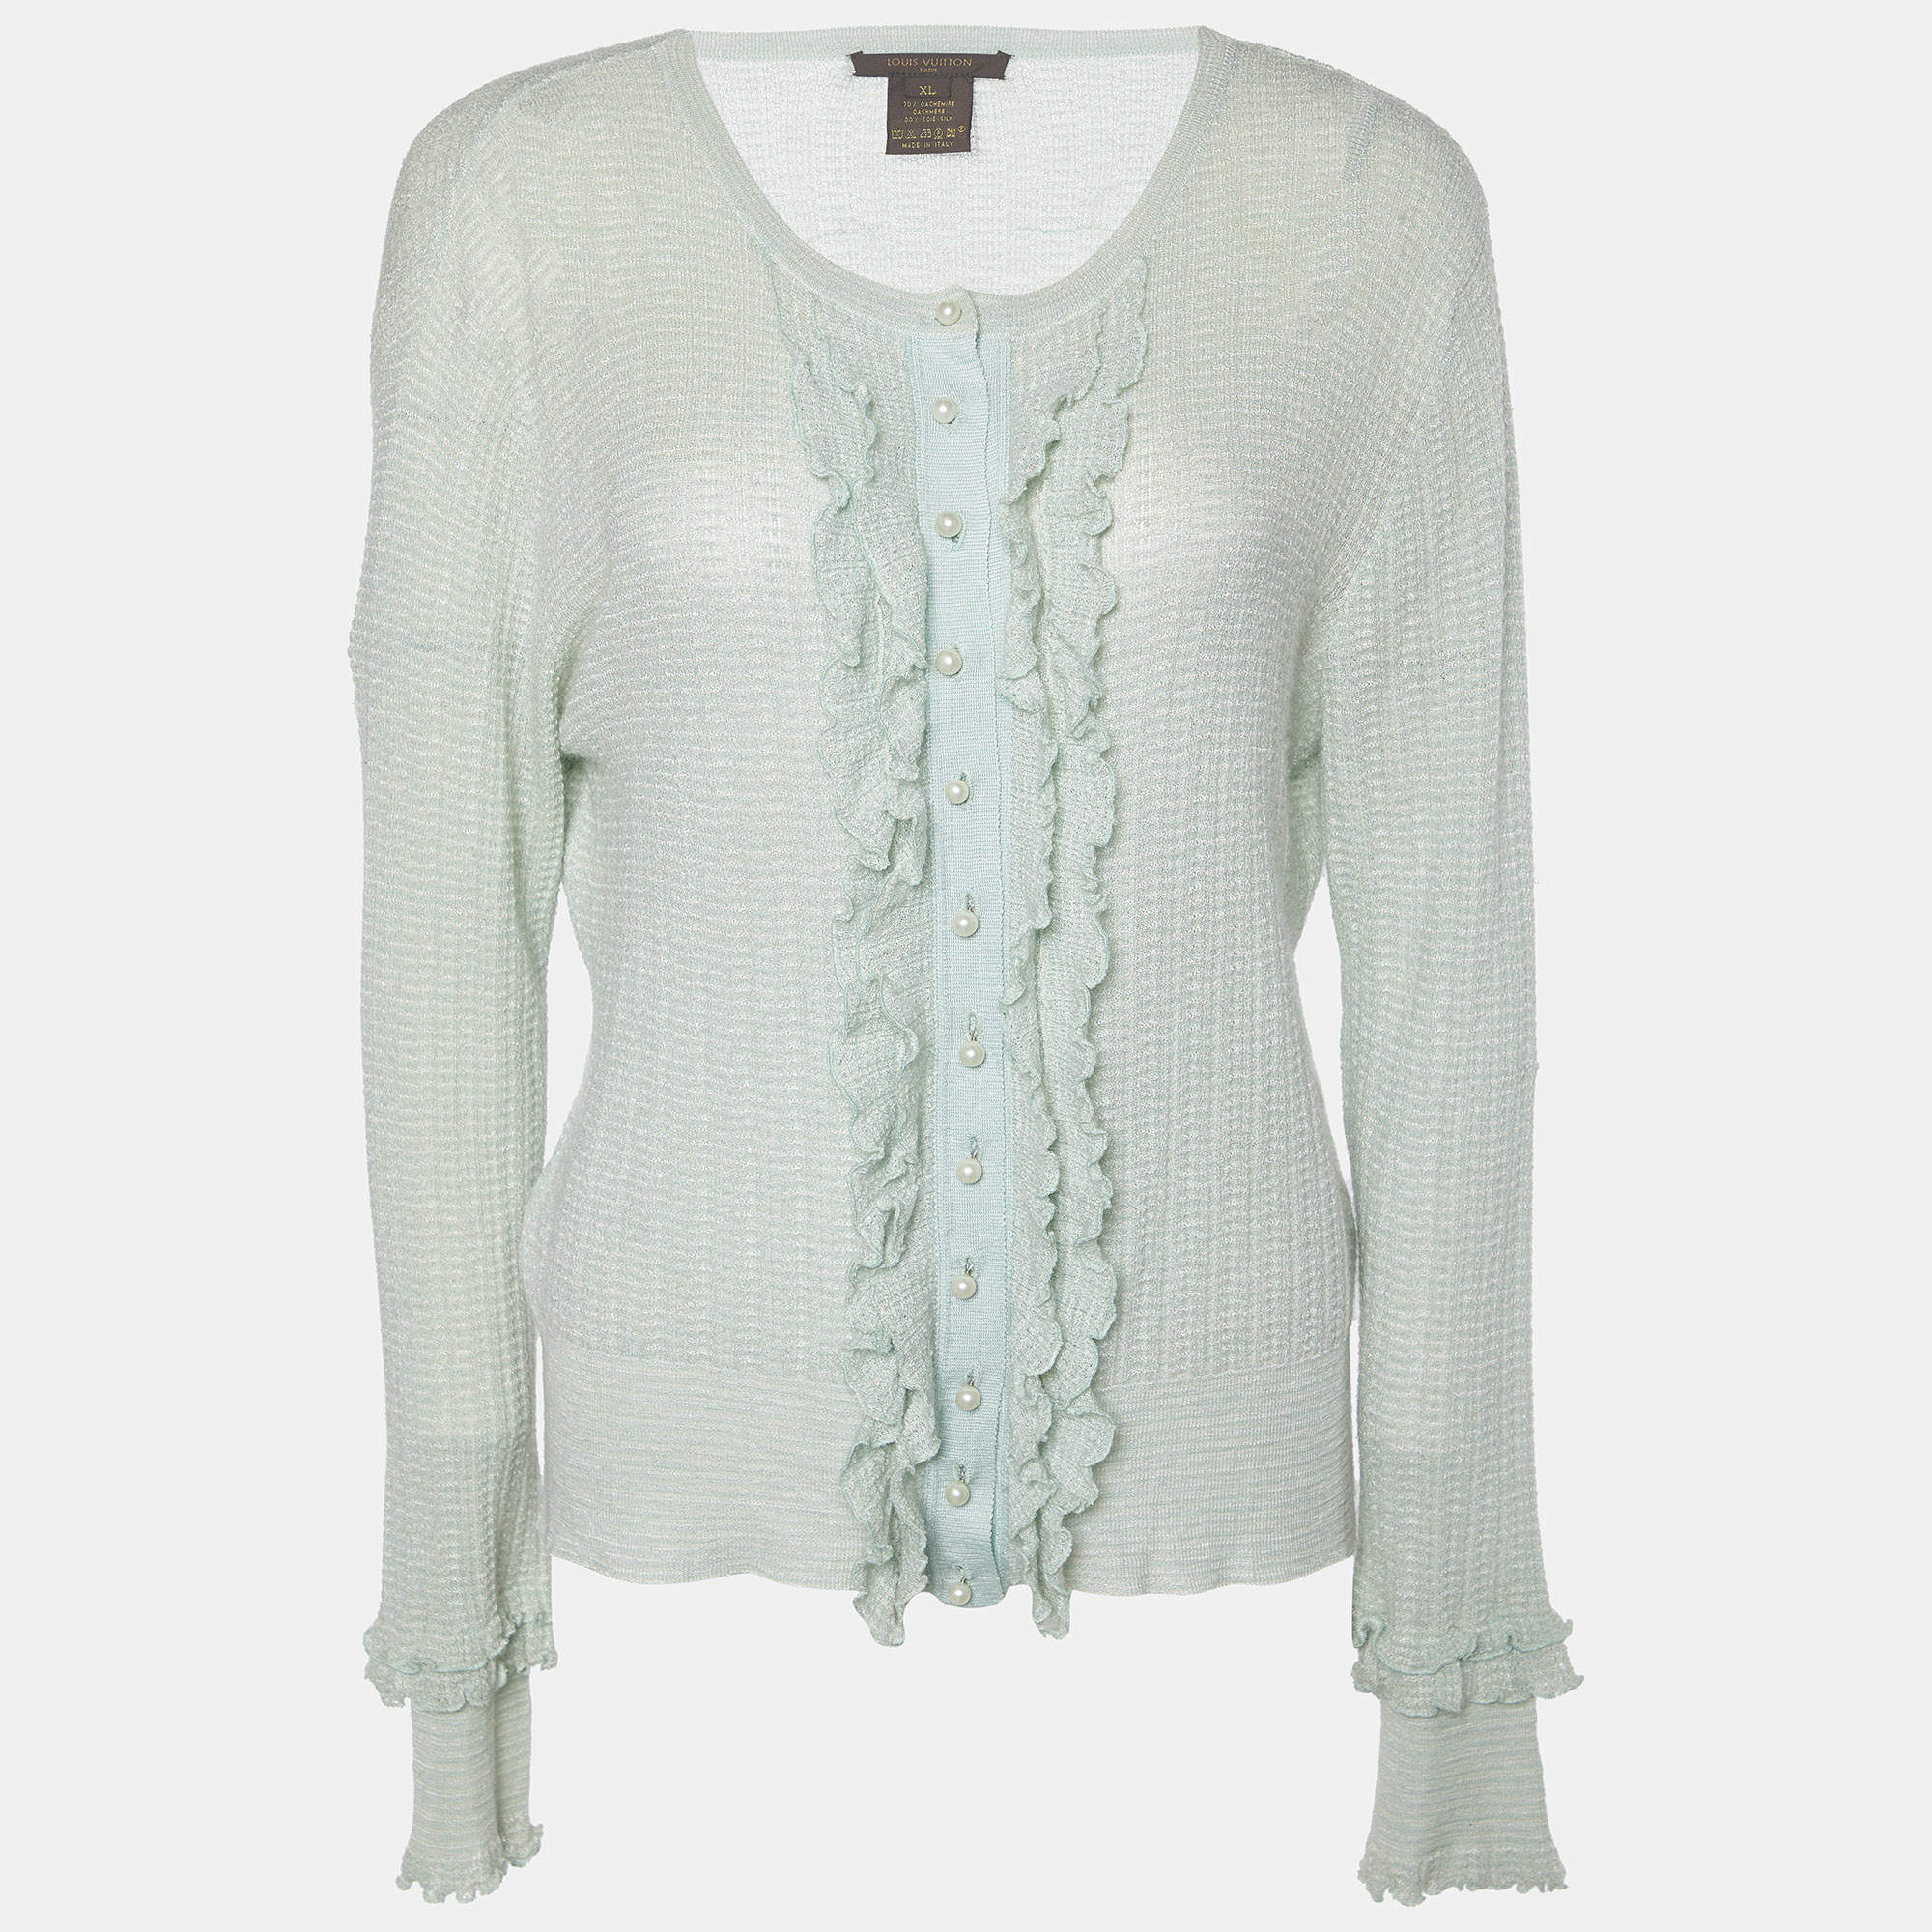 Louis Vuitton Light Green Cashmere & Silk Knit Cardigan XL